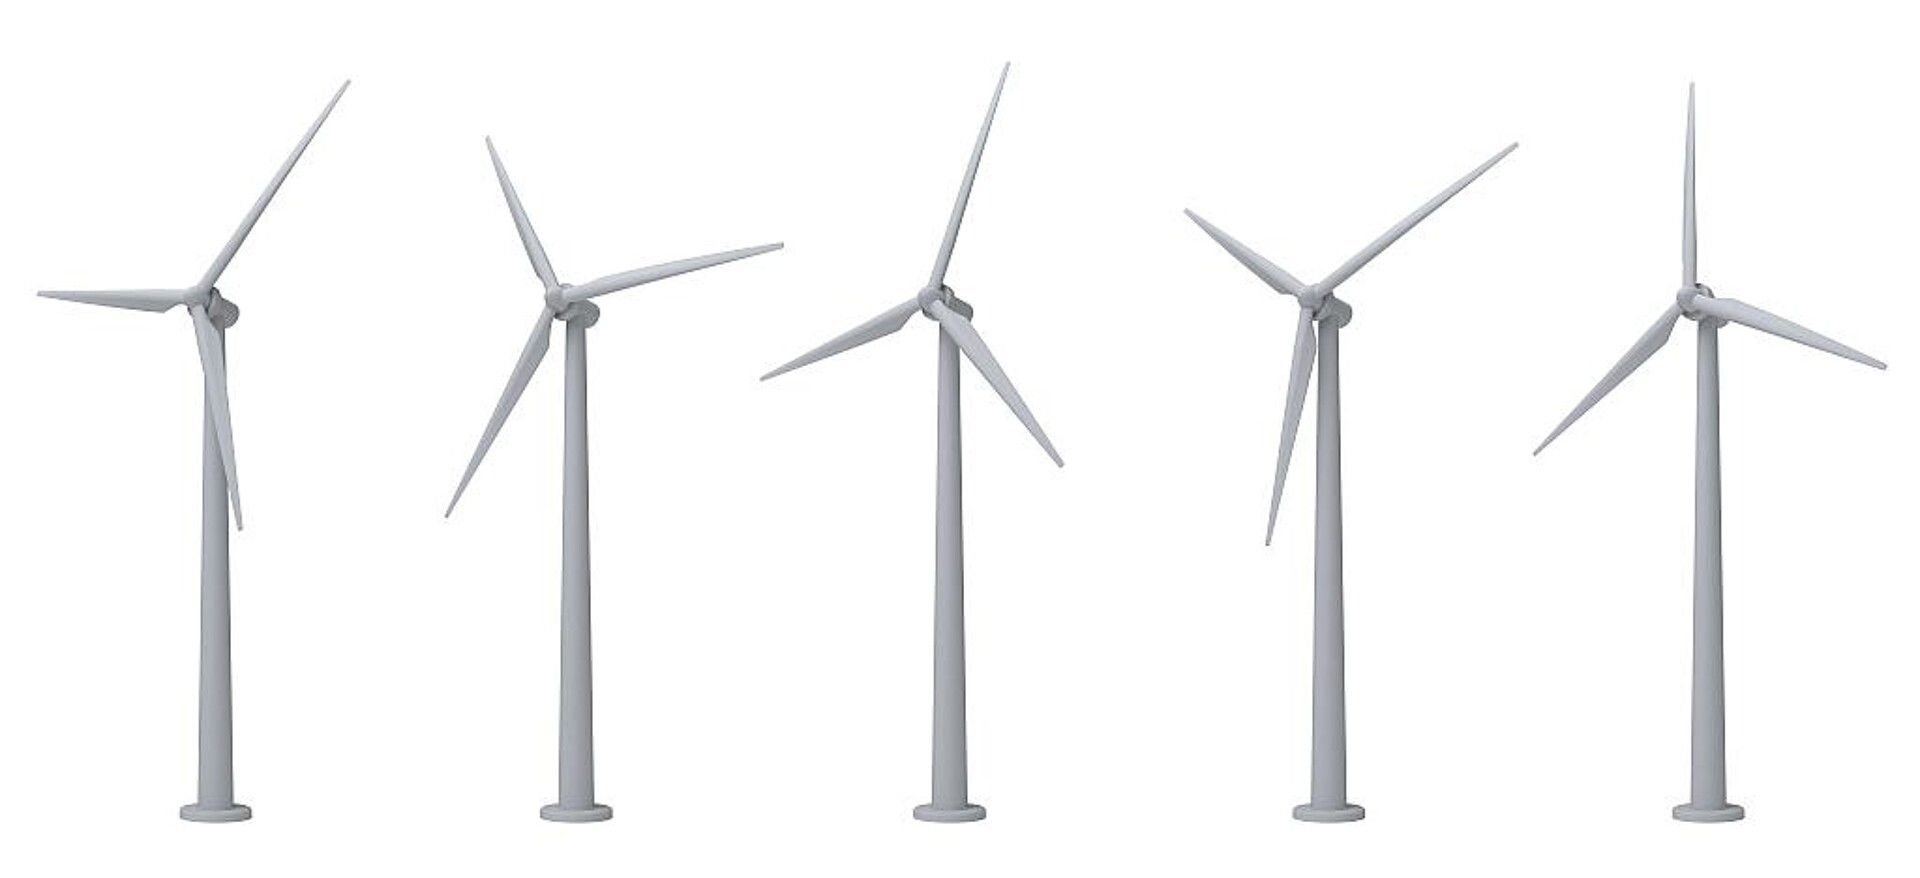 Pultrudierte Profile helfen in Windkraftanlagen als Versteifungen (spare caps), die Energieversorgung nachhaltig zu sichern. (Foto: Adobe Stock)